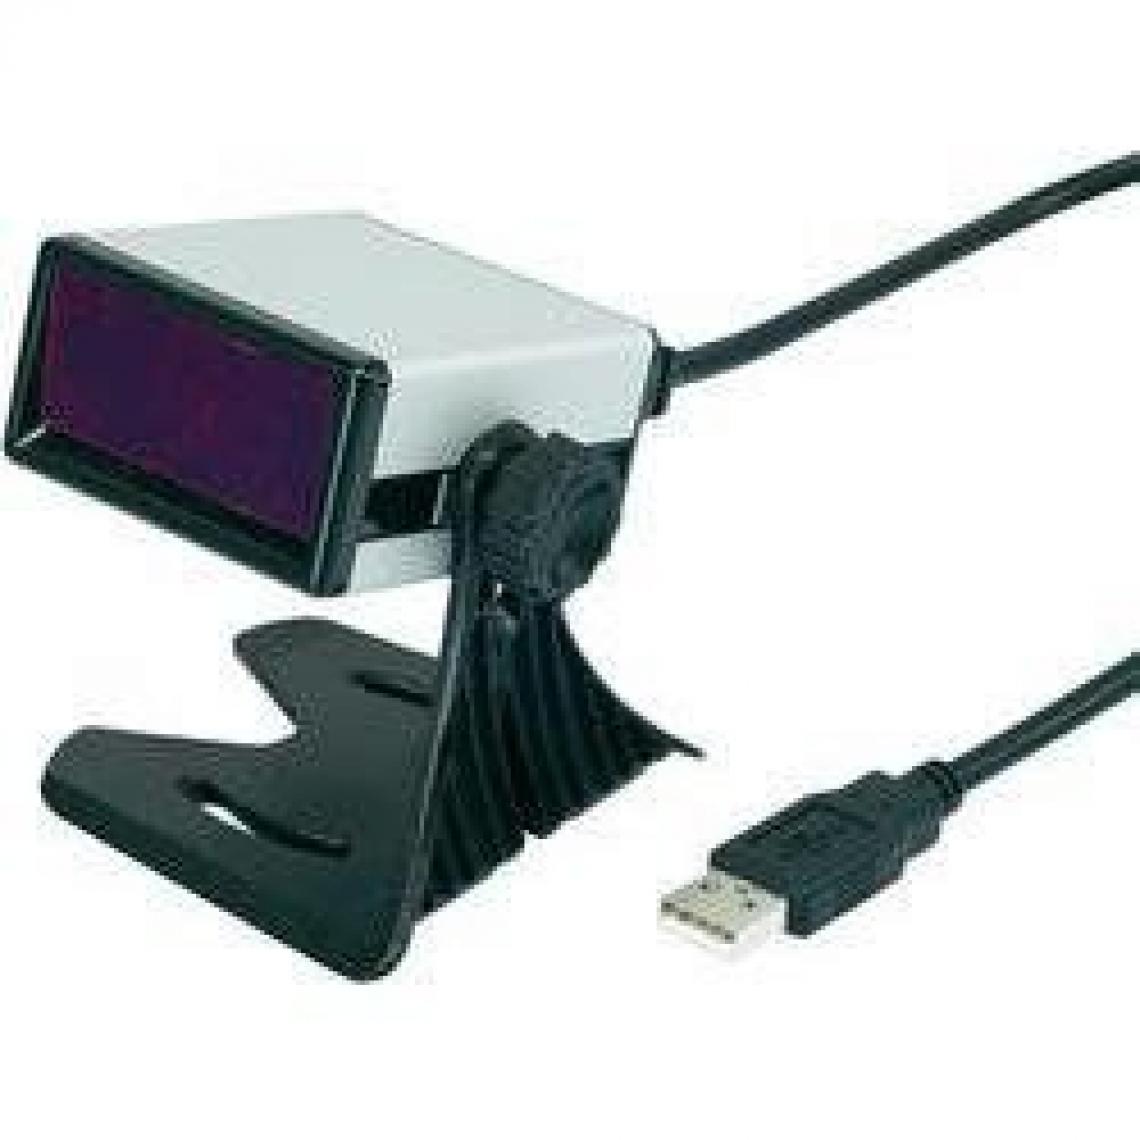 Inconnu - Scanner à codes-barres 1D Riotec Kit USB FS5020E - USB - Scanner